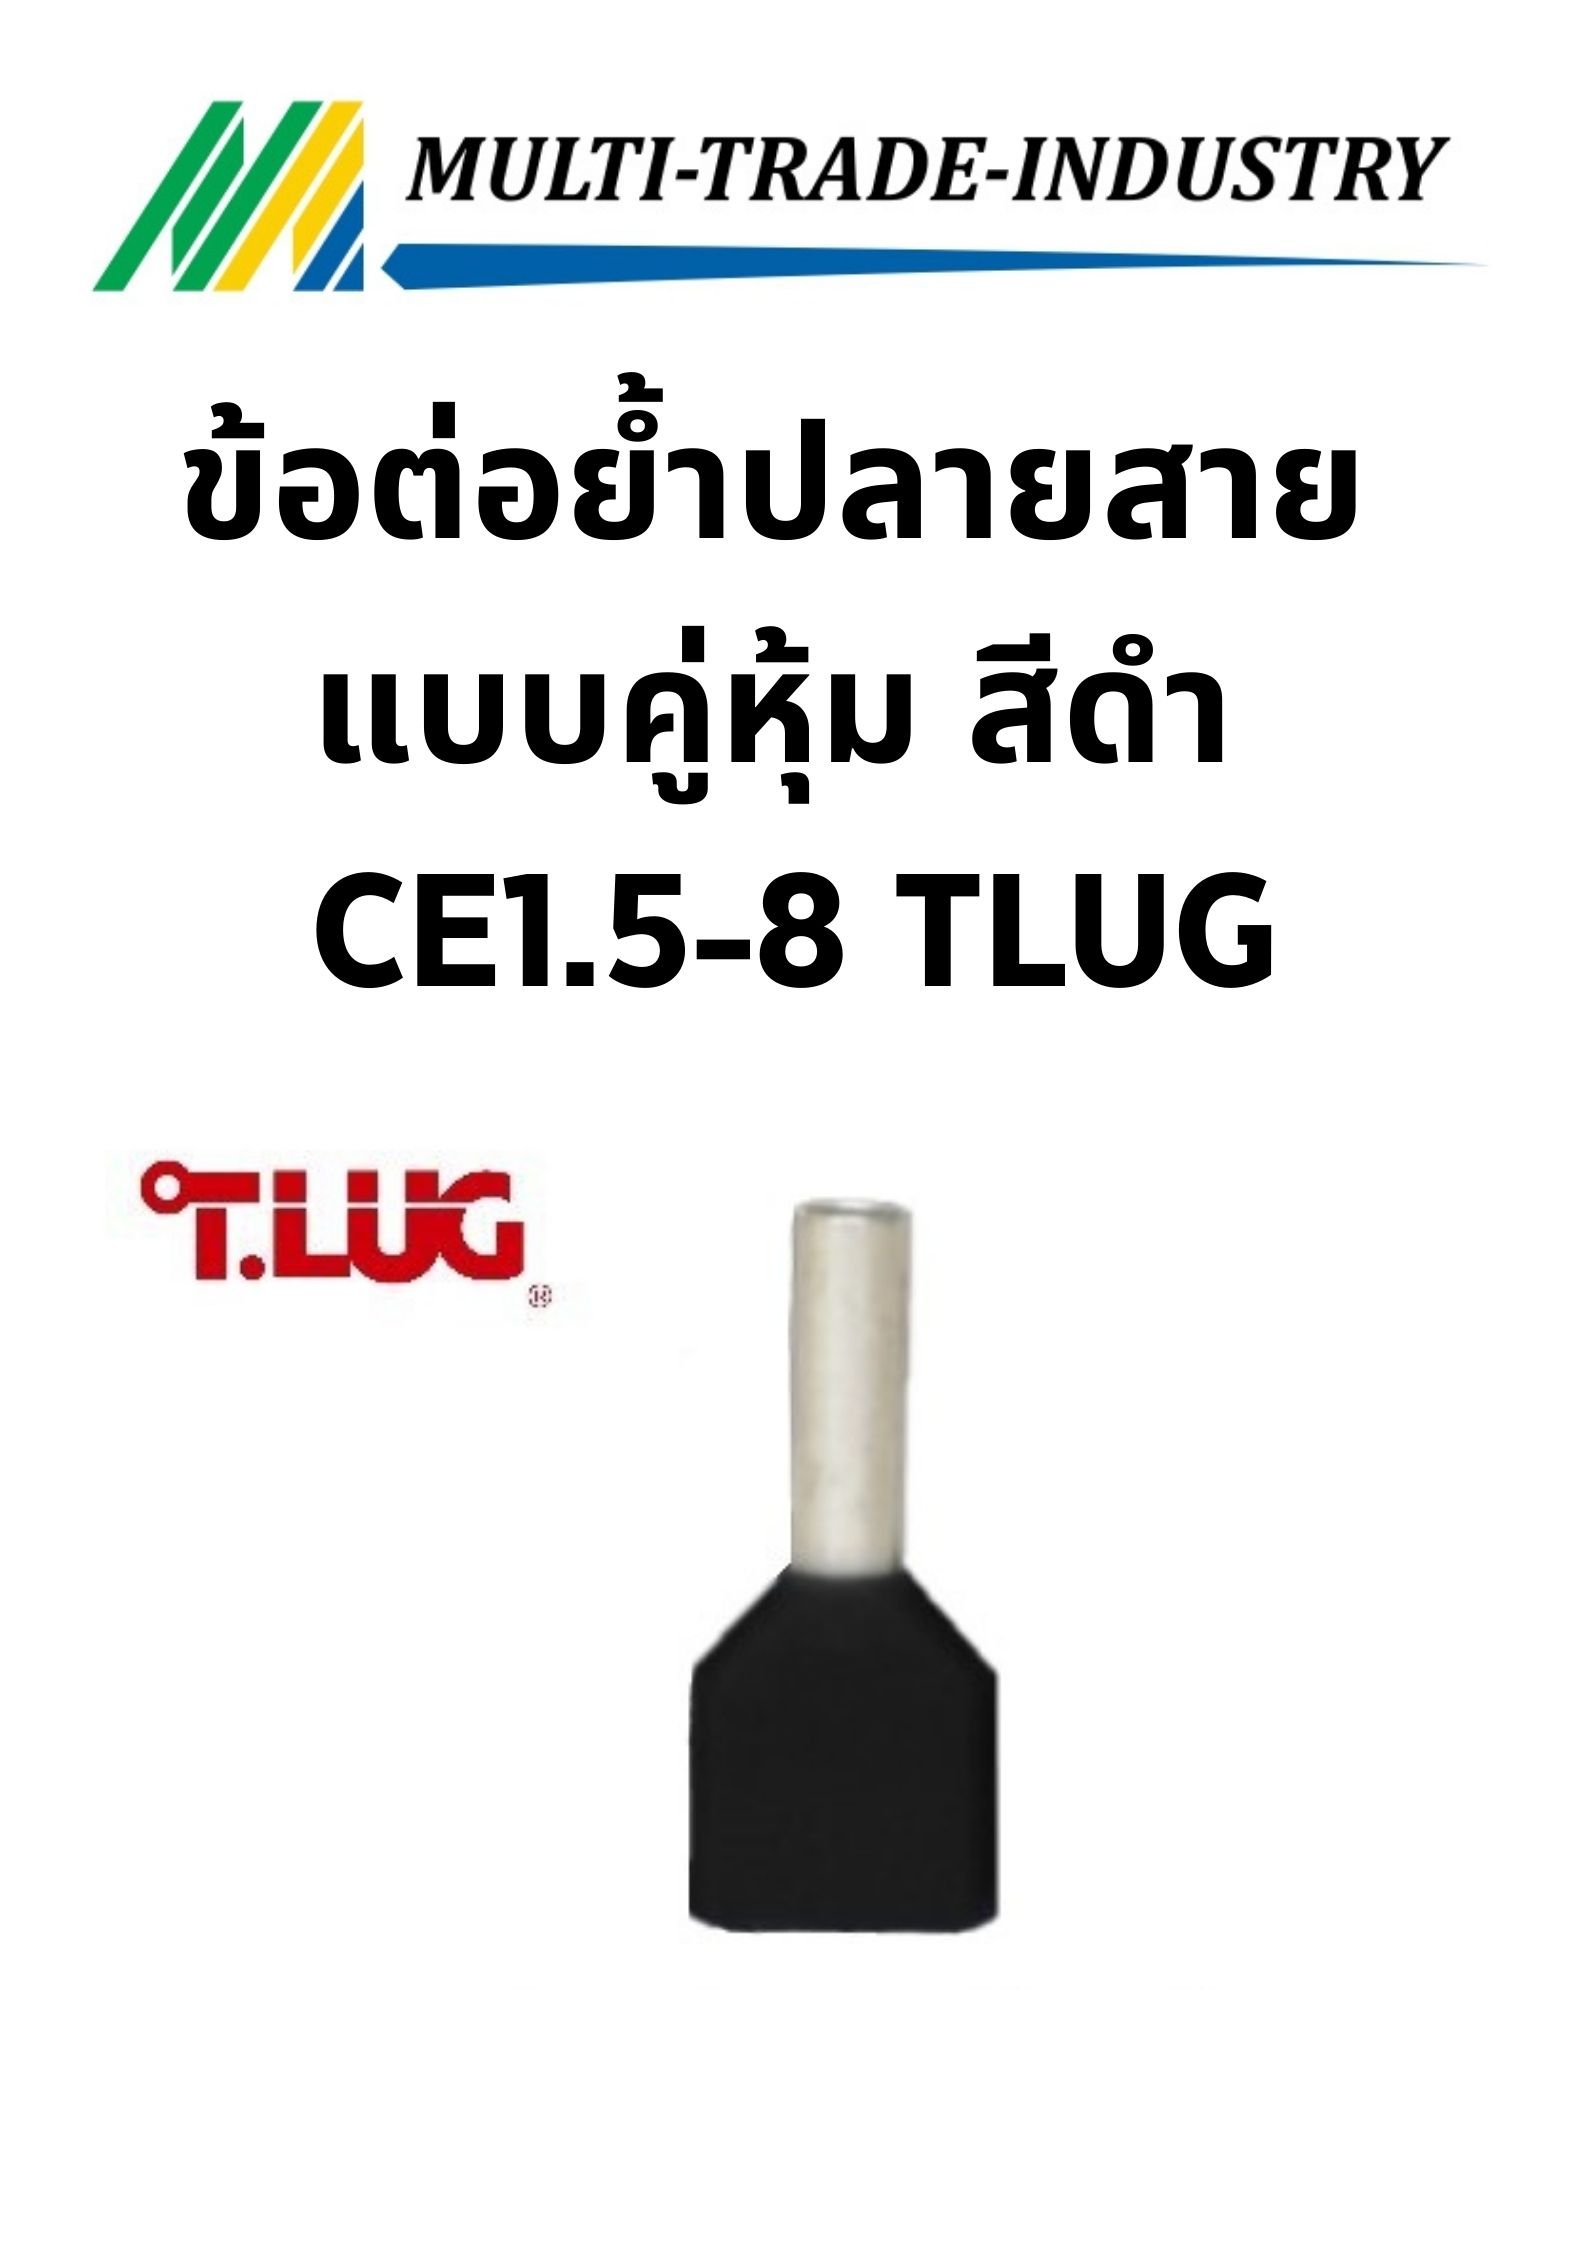 ข้อต่อย้ำปลายสาย แบบคู่หุ้ม สีดำ CE1.5-8 TLUG